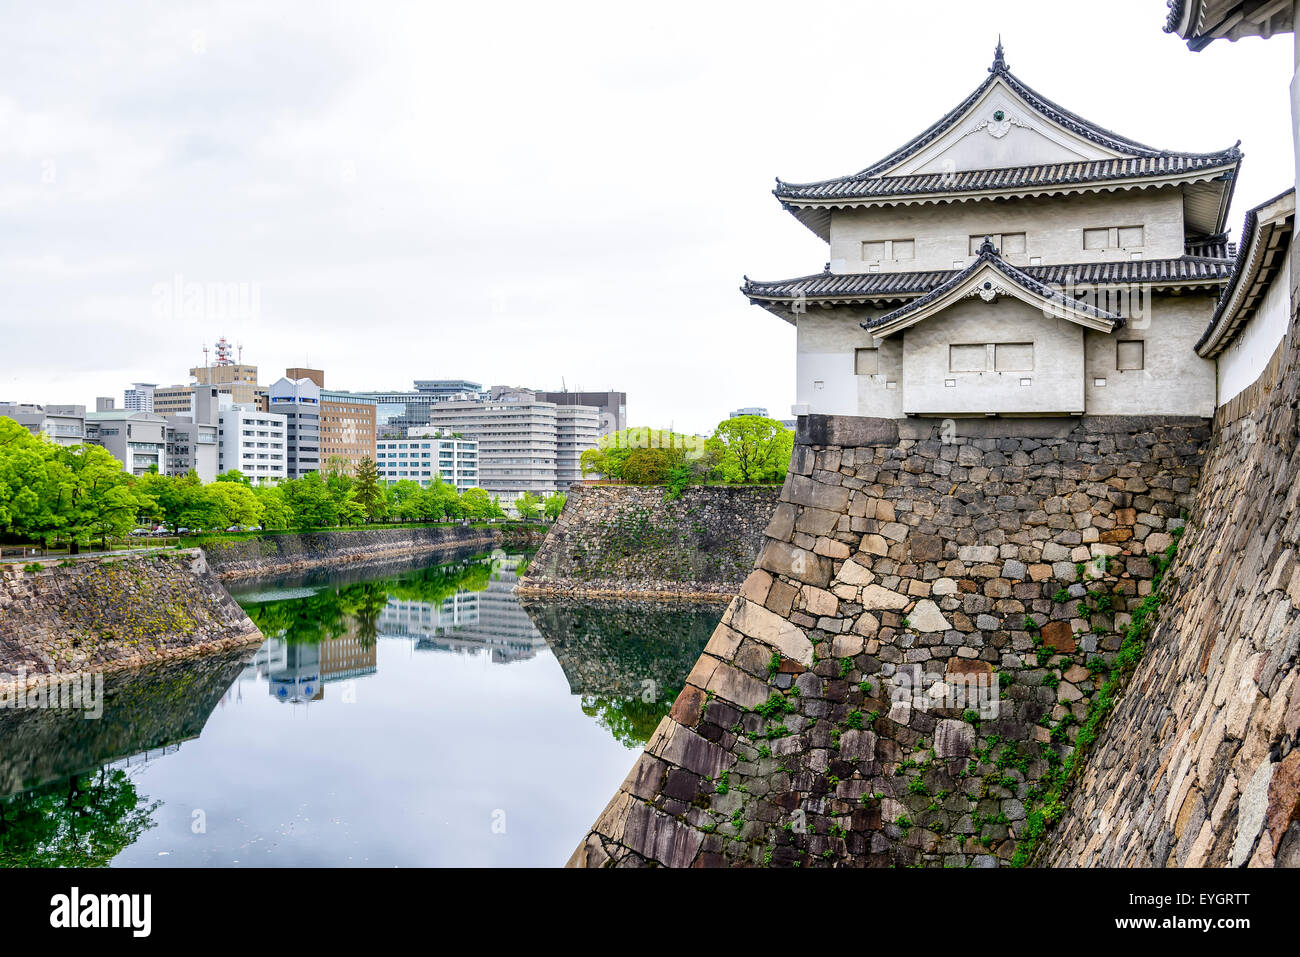 Die beeindruckenden Mauern der Burg von Osaka, Japan. Burg von Osaka ist eine japanische Burg in Chuo-ku, Osaka, Japan. Stockfoto